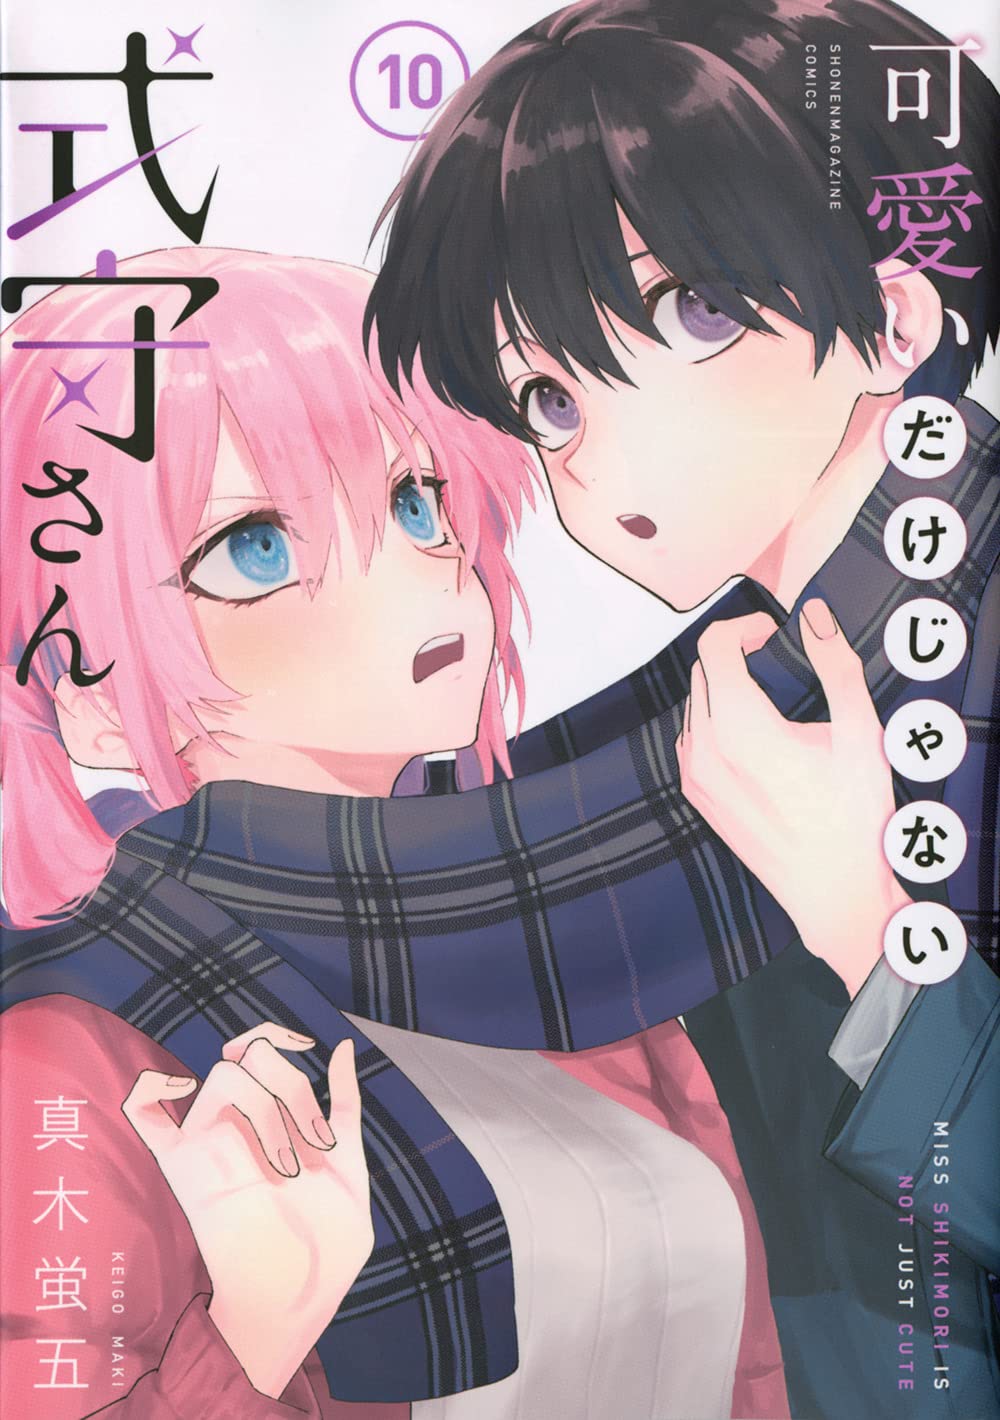 Honzuki no Gekokujou: Volume 26 da light novel chega as lojas japonesas.  Terceira temporada do anime deve apresentar atualizações em breve.